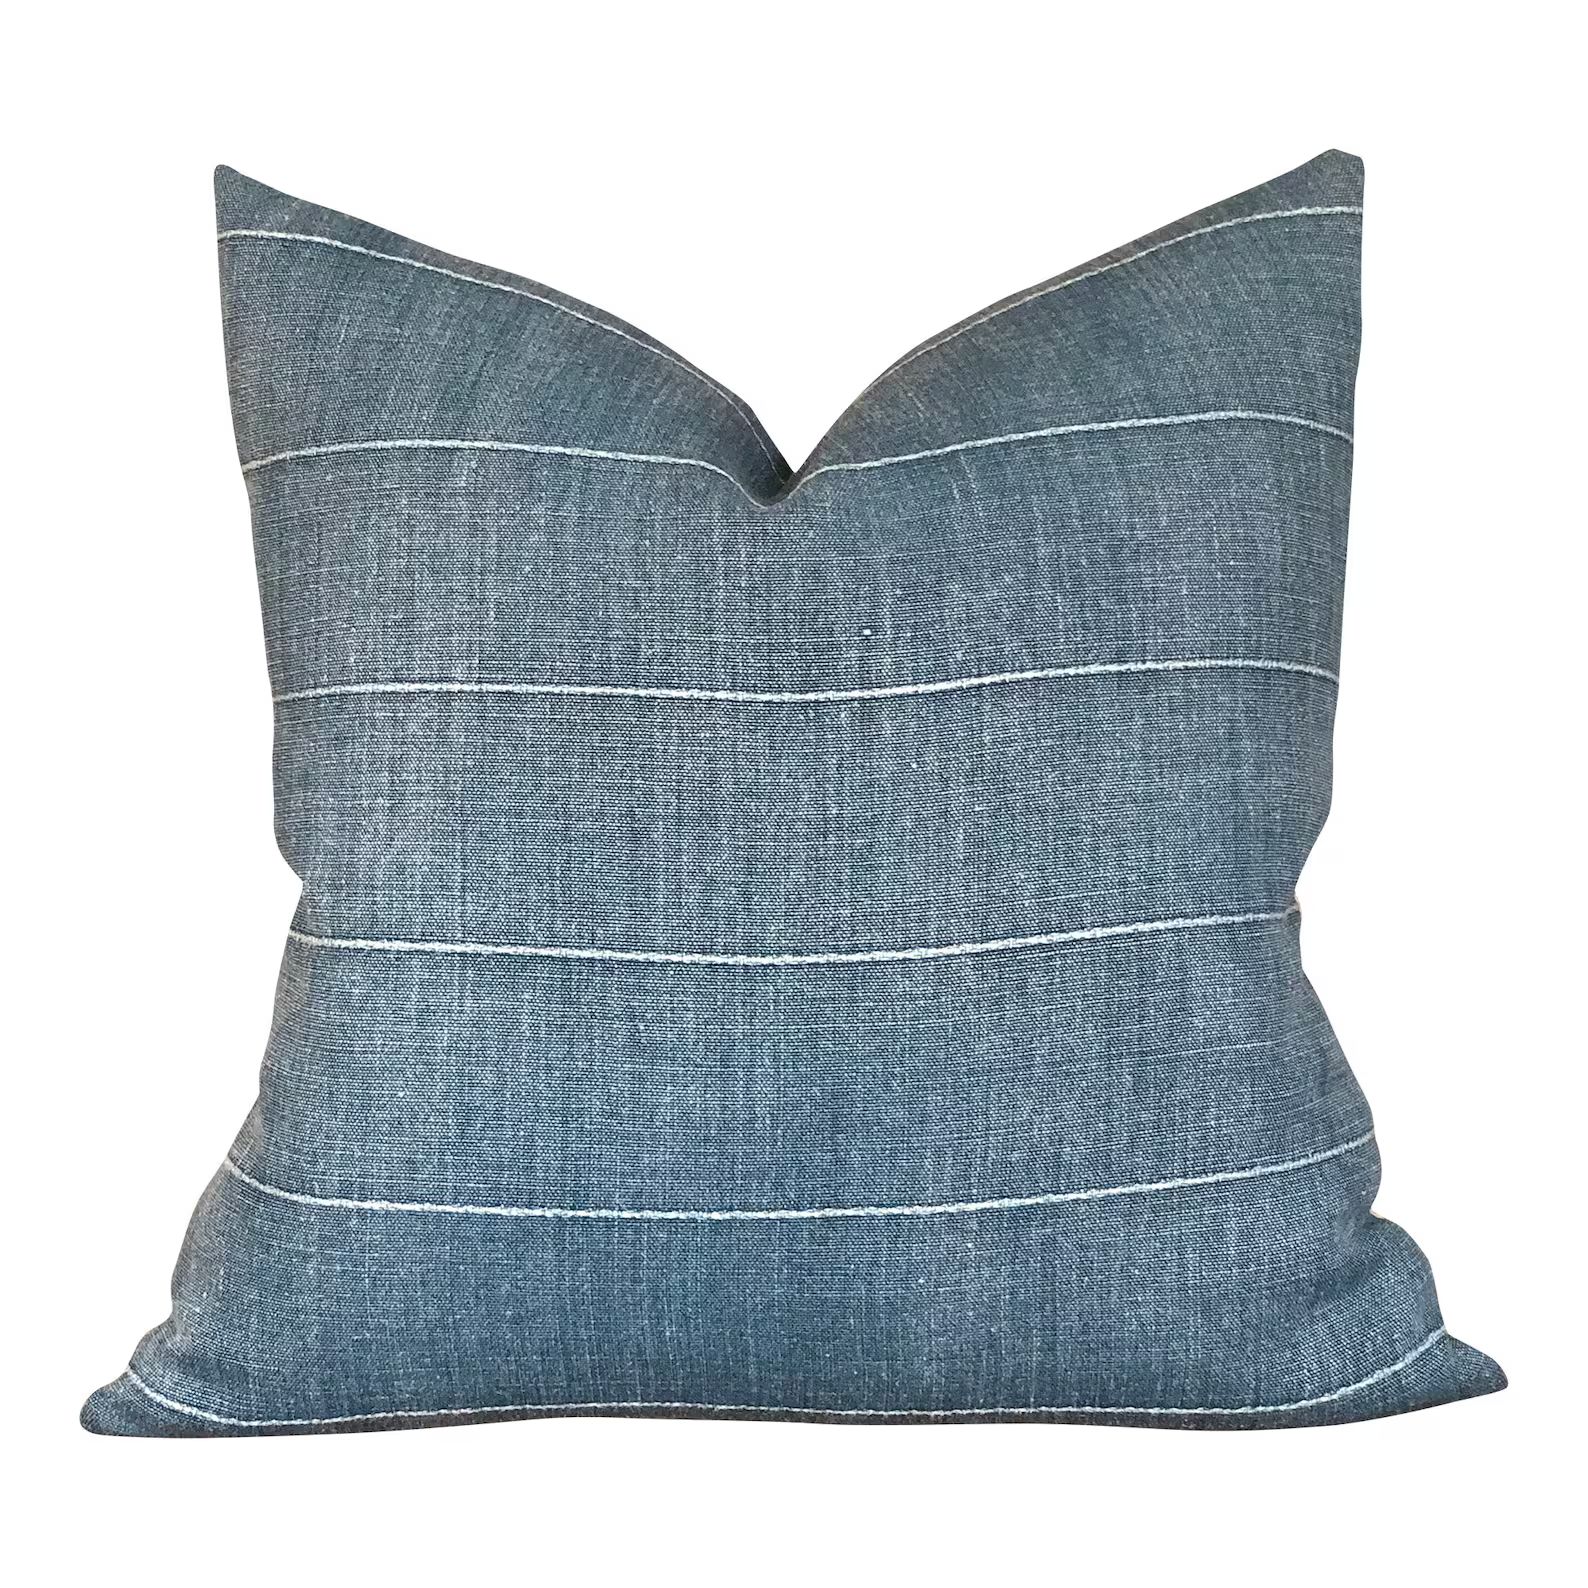 Designer Faso in Baleen Pillow Cover // Farmhouse Decor Pillow // Indigo Blue Linen Decorative Pi... | Etsy (US)